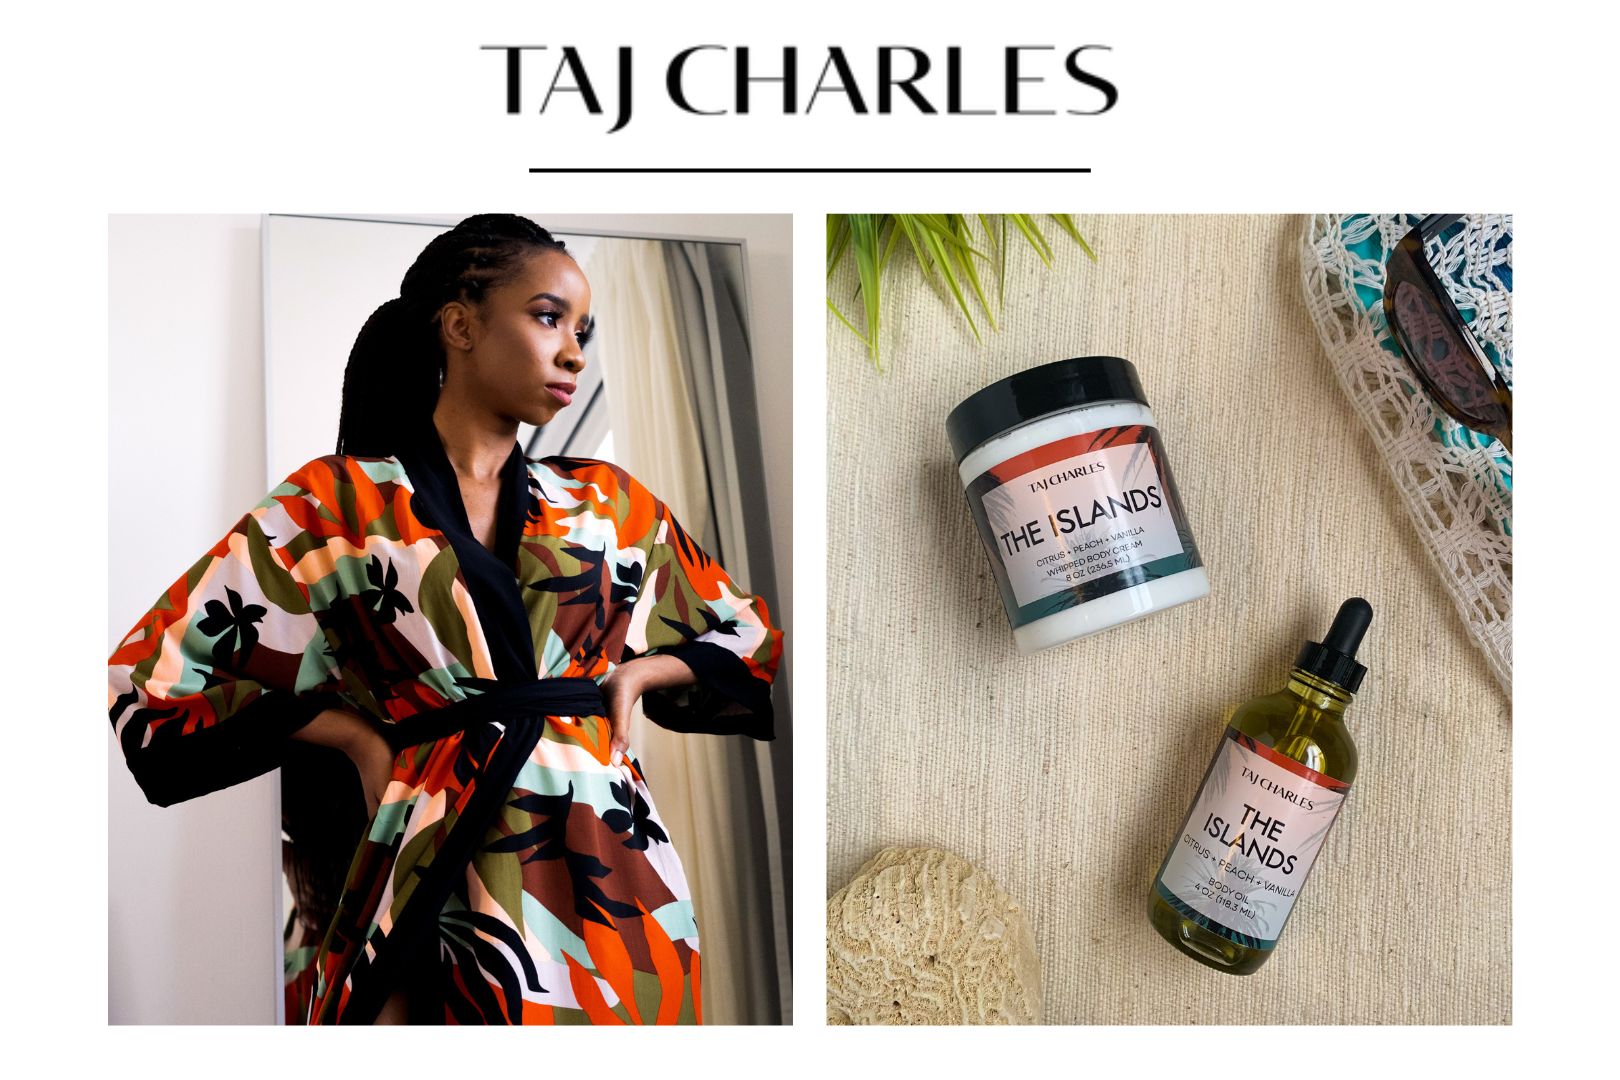 Taj Charles silk robe and Taj Charles The Islands products